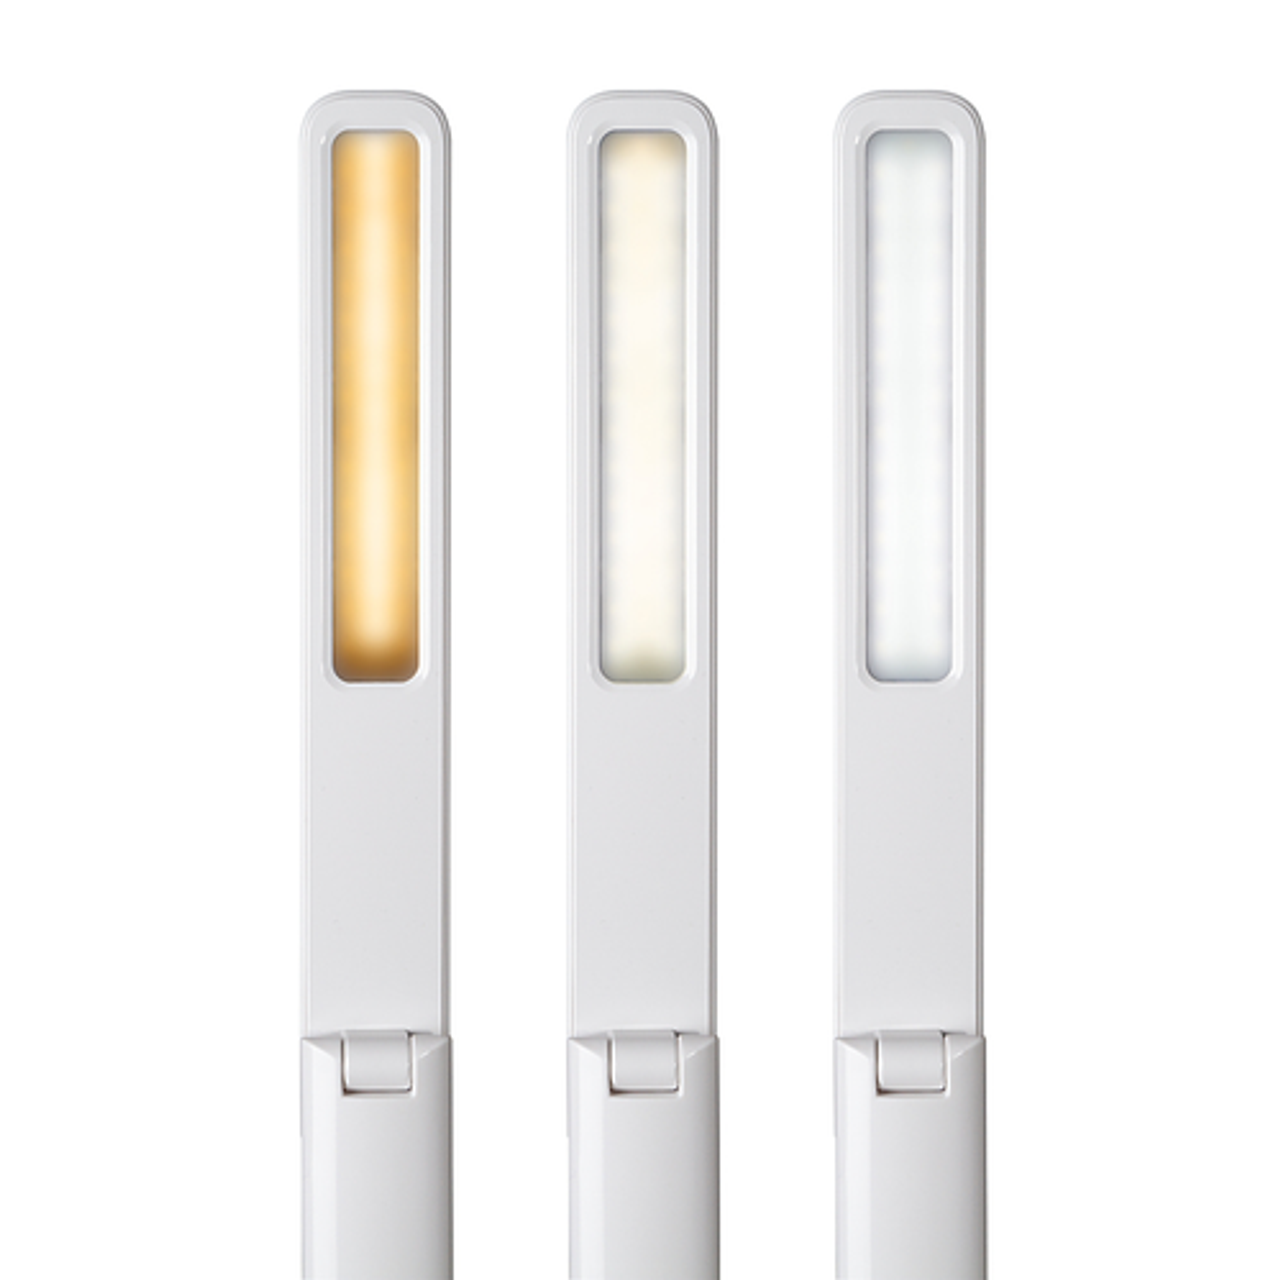 OttLite Slimline LED Desk Lamp - White